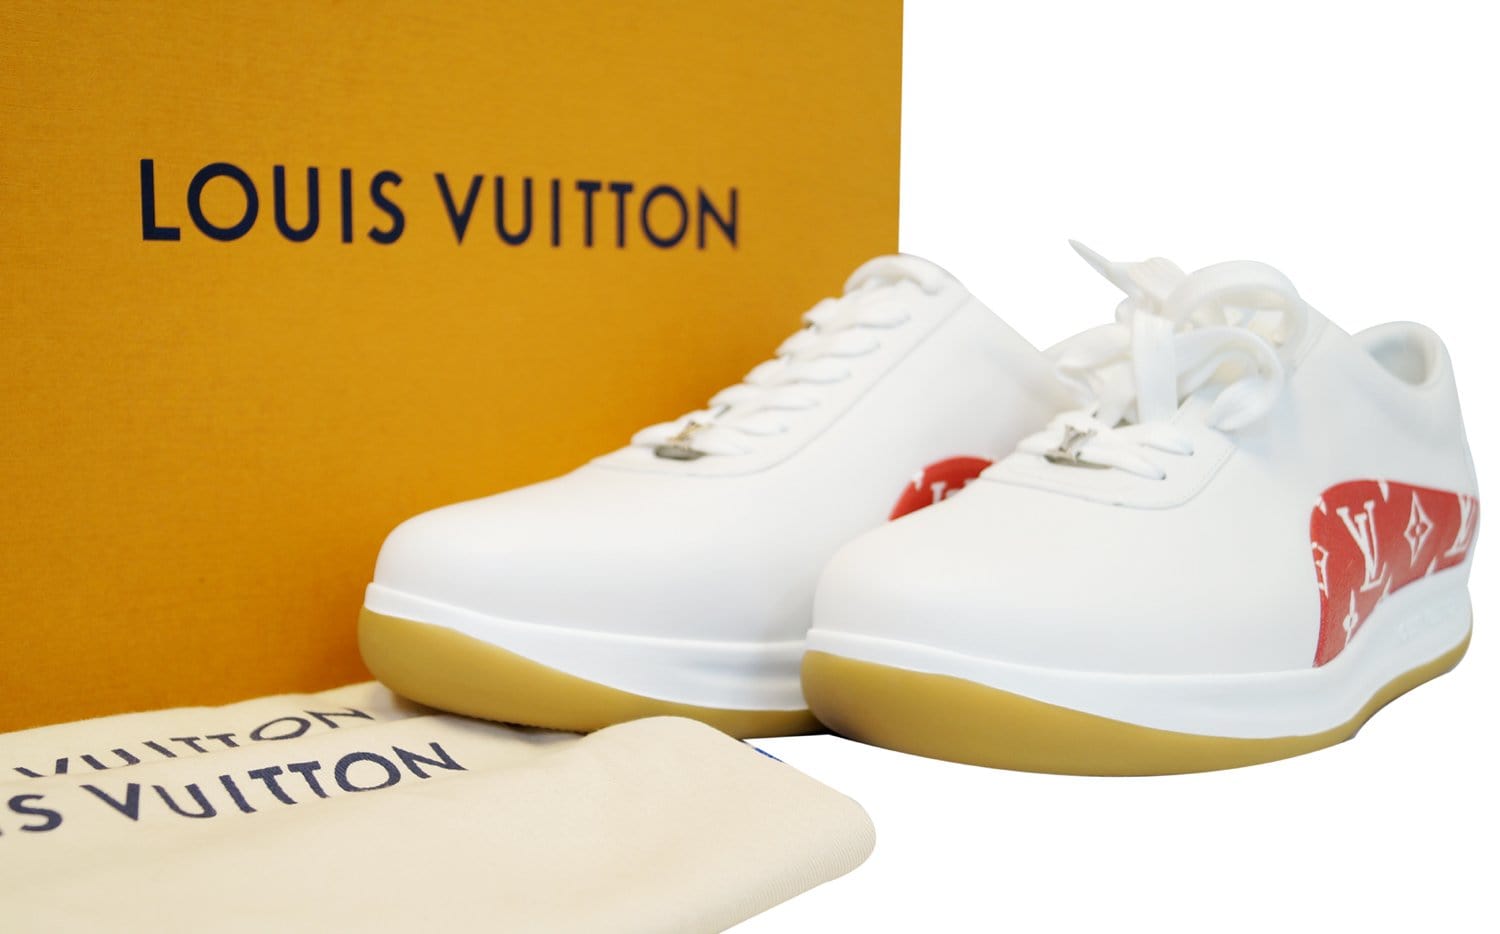 Shoe Surgeon x Supreme x Louis Vuitton Kidswear